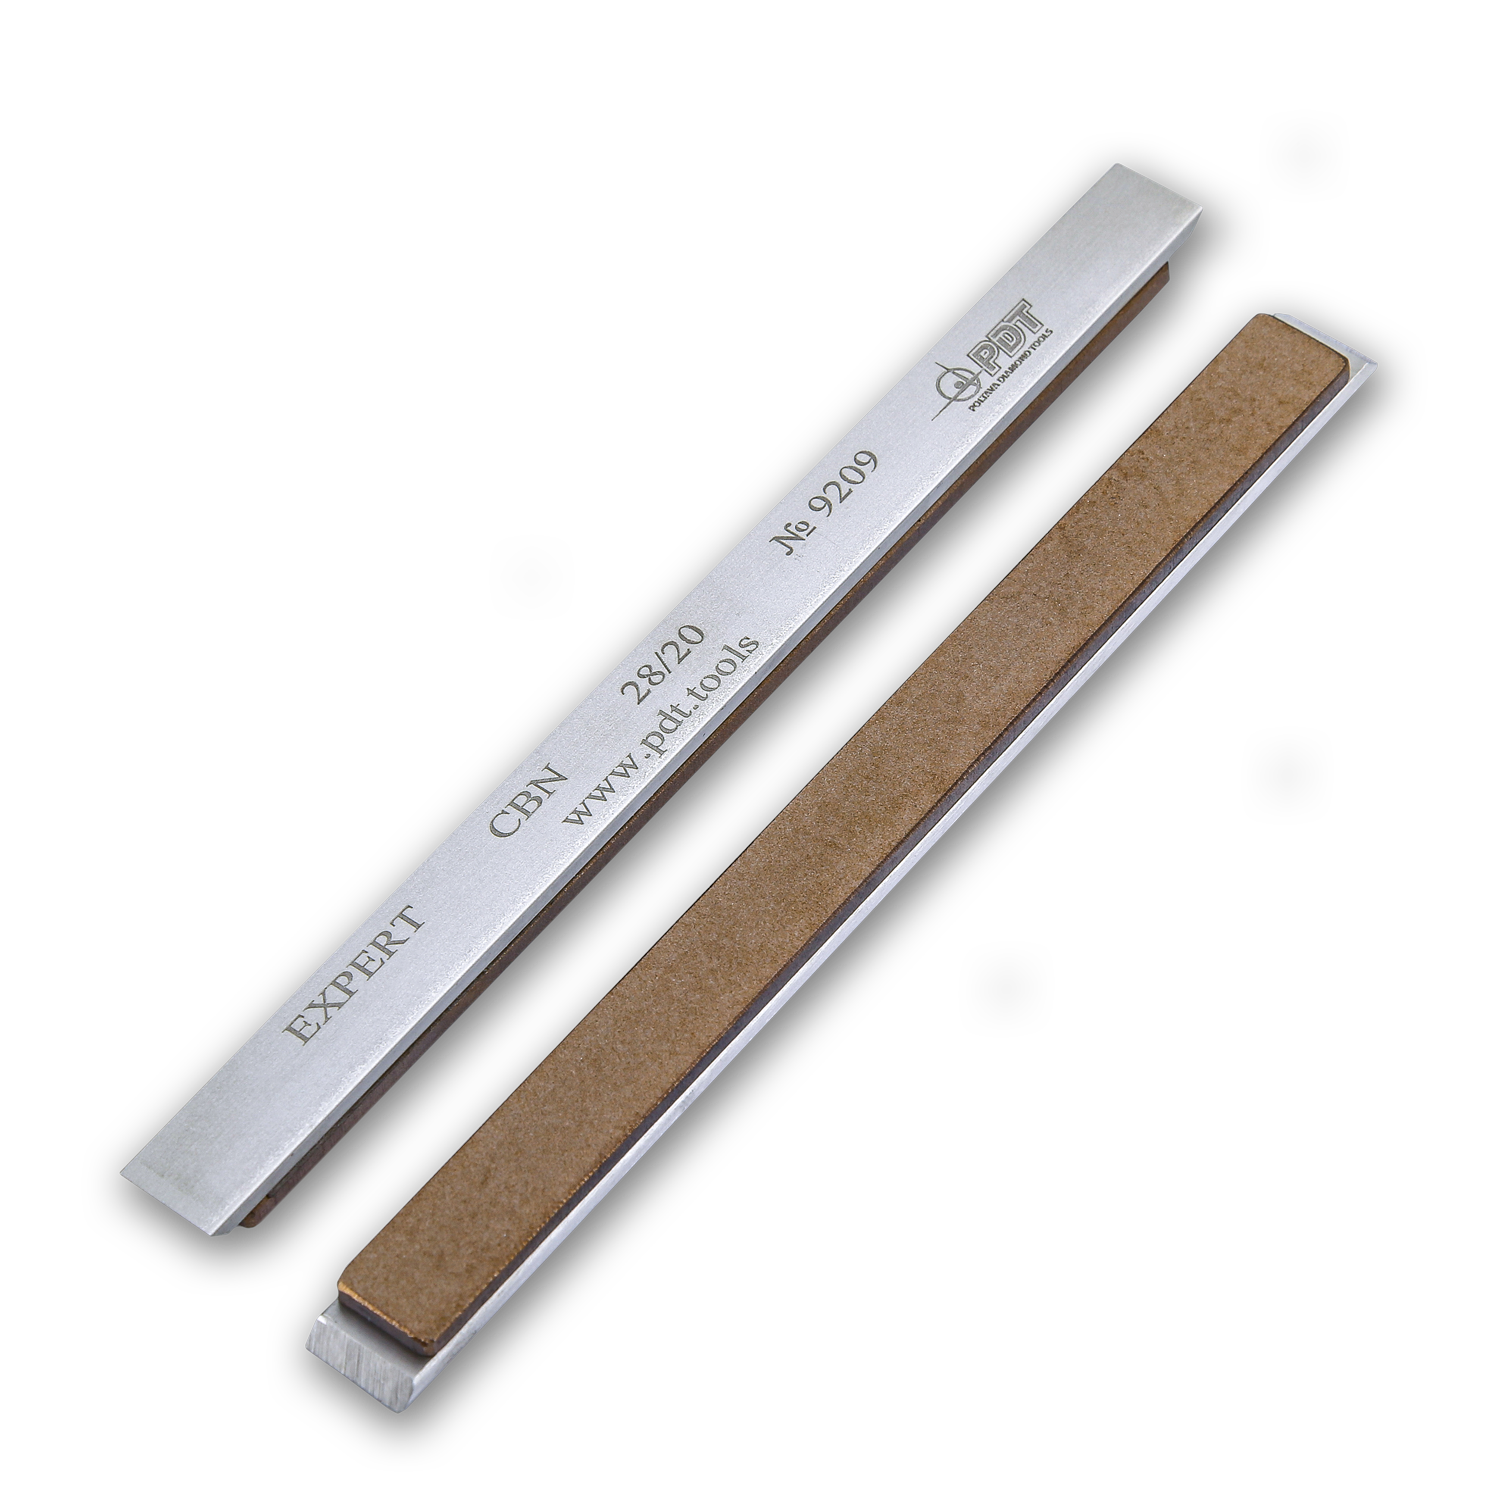 Брусок эльборовый PDT Expert на алюминиевом бланке 150х12х3 мм зернистость 28/20 мкм медно-оловянная связка EXBMB